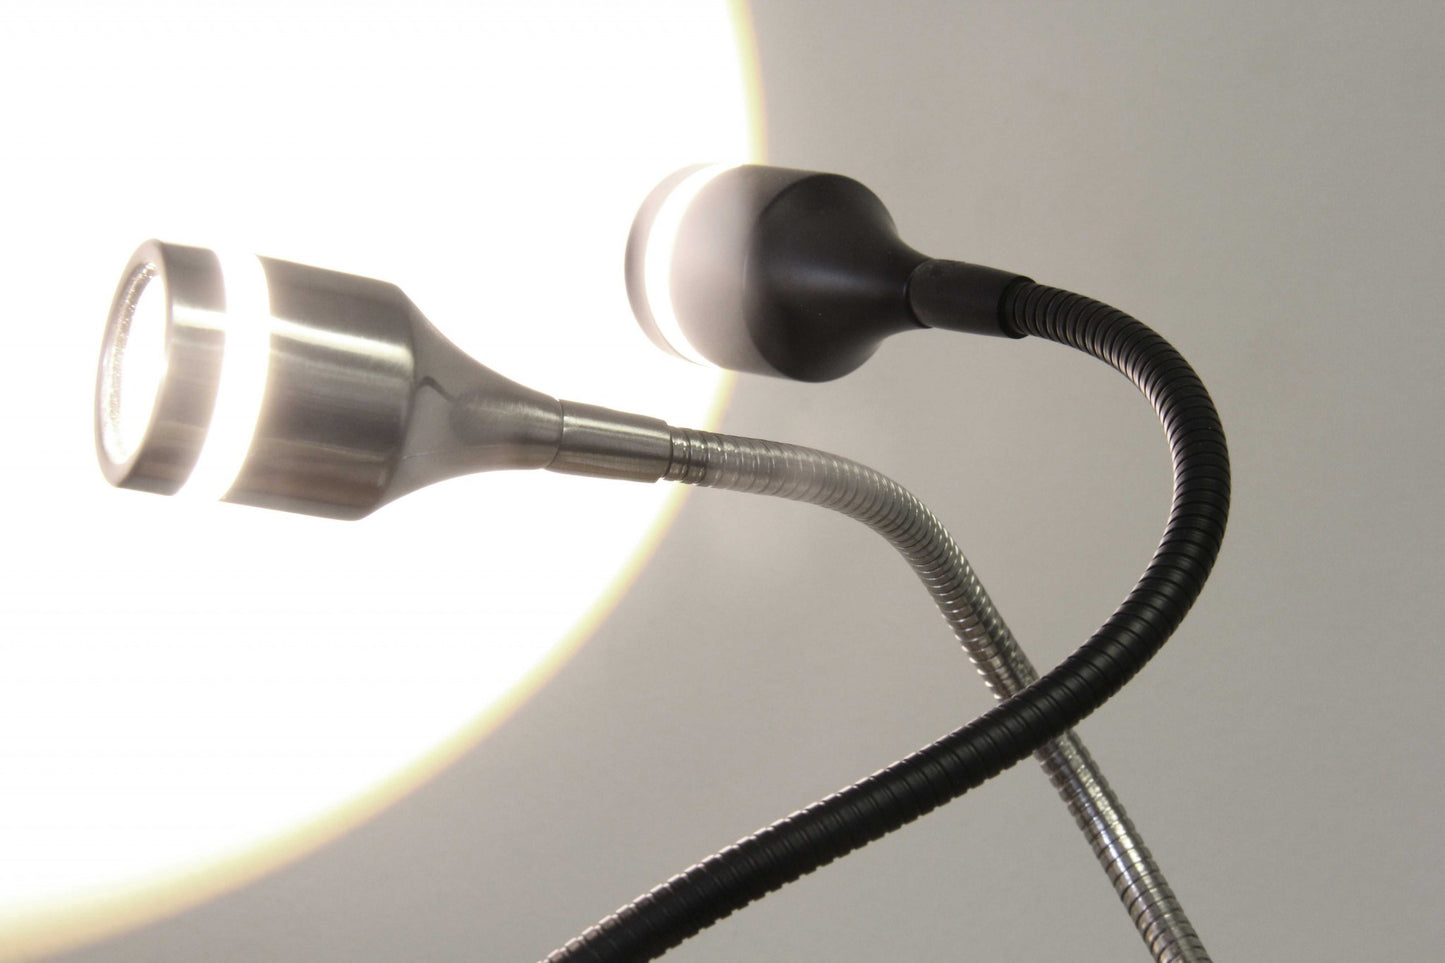 Floor Lamp in Brushed Steel Metal Adjustable LED